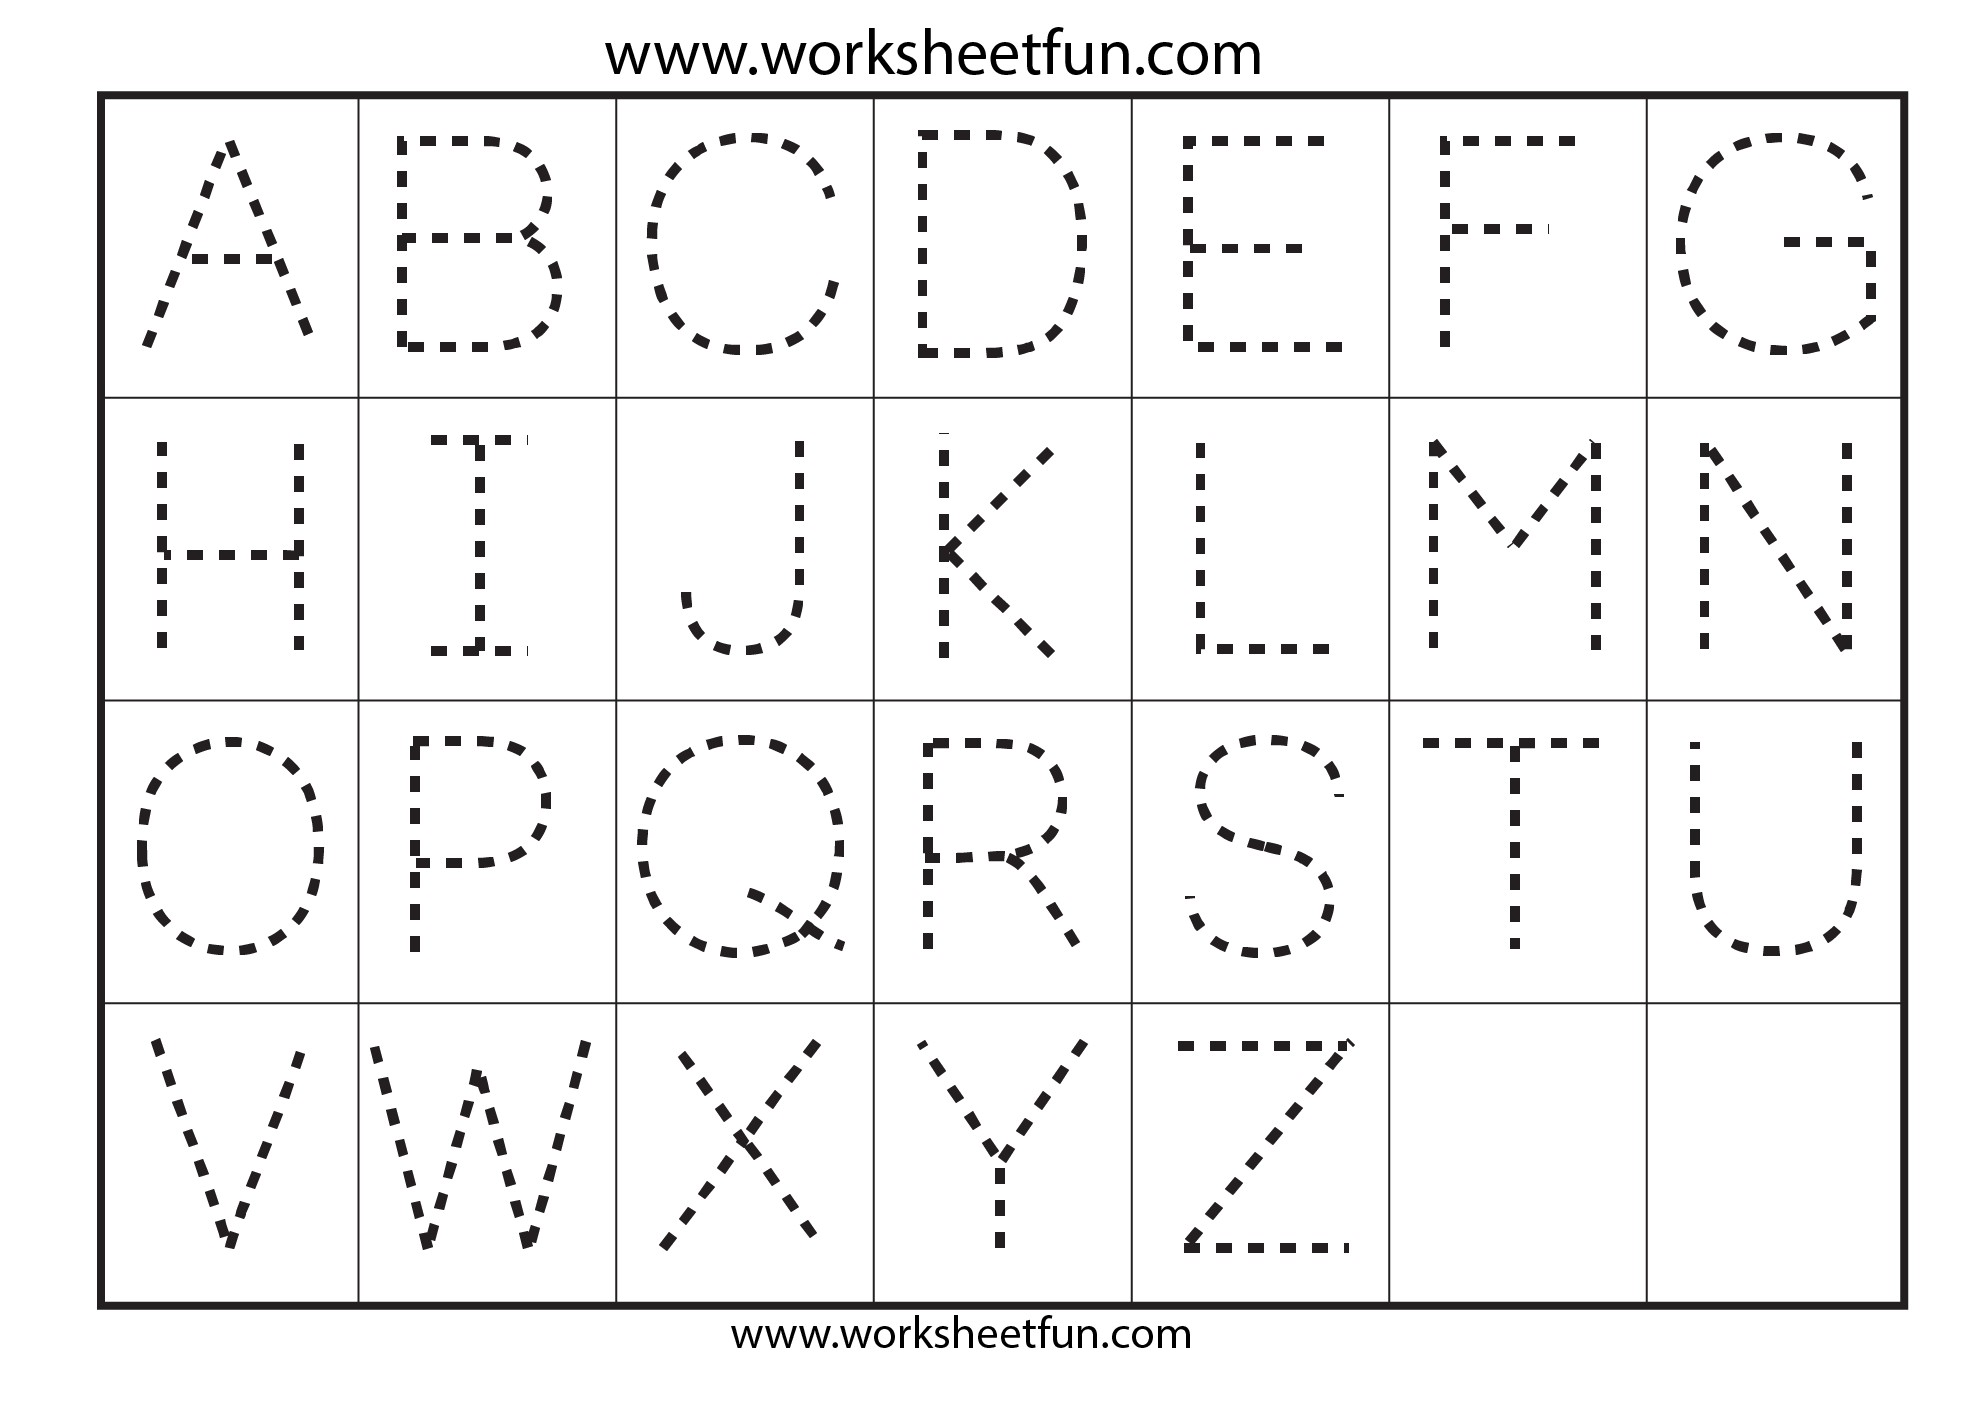 Kindergarten Tracing Alphabet Worksheets